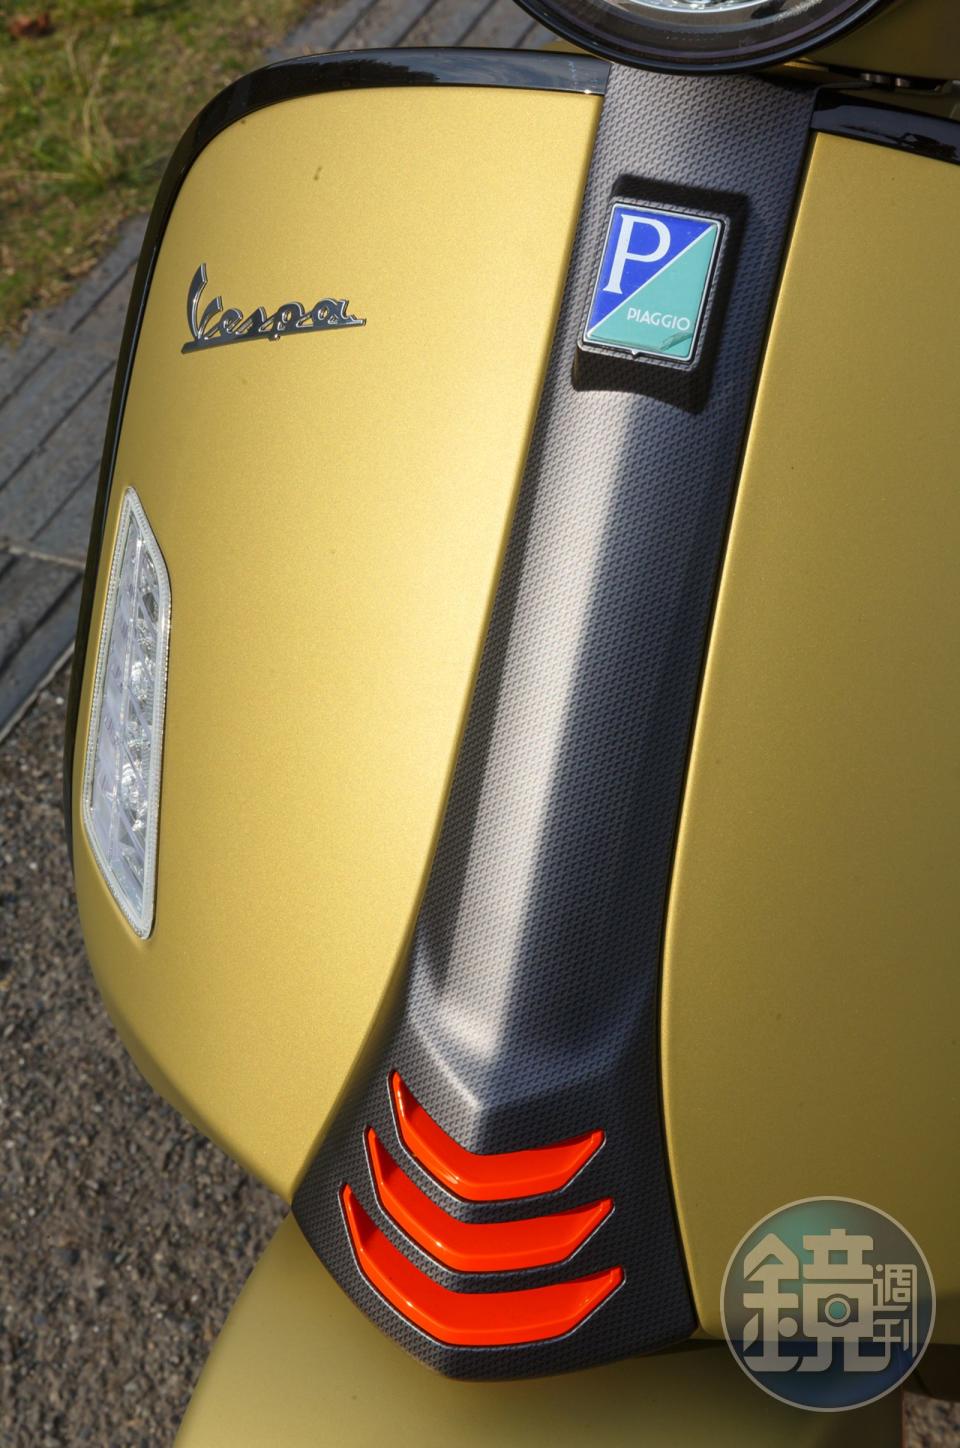 GTS 300 Super Sport採用碳纖維包覆車前的領結飾蓋，並搭配霓虹橘跳色點綴設計。